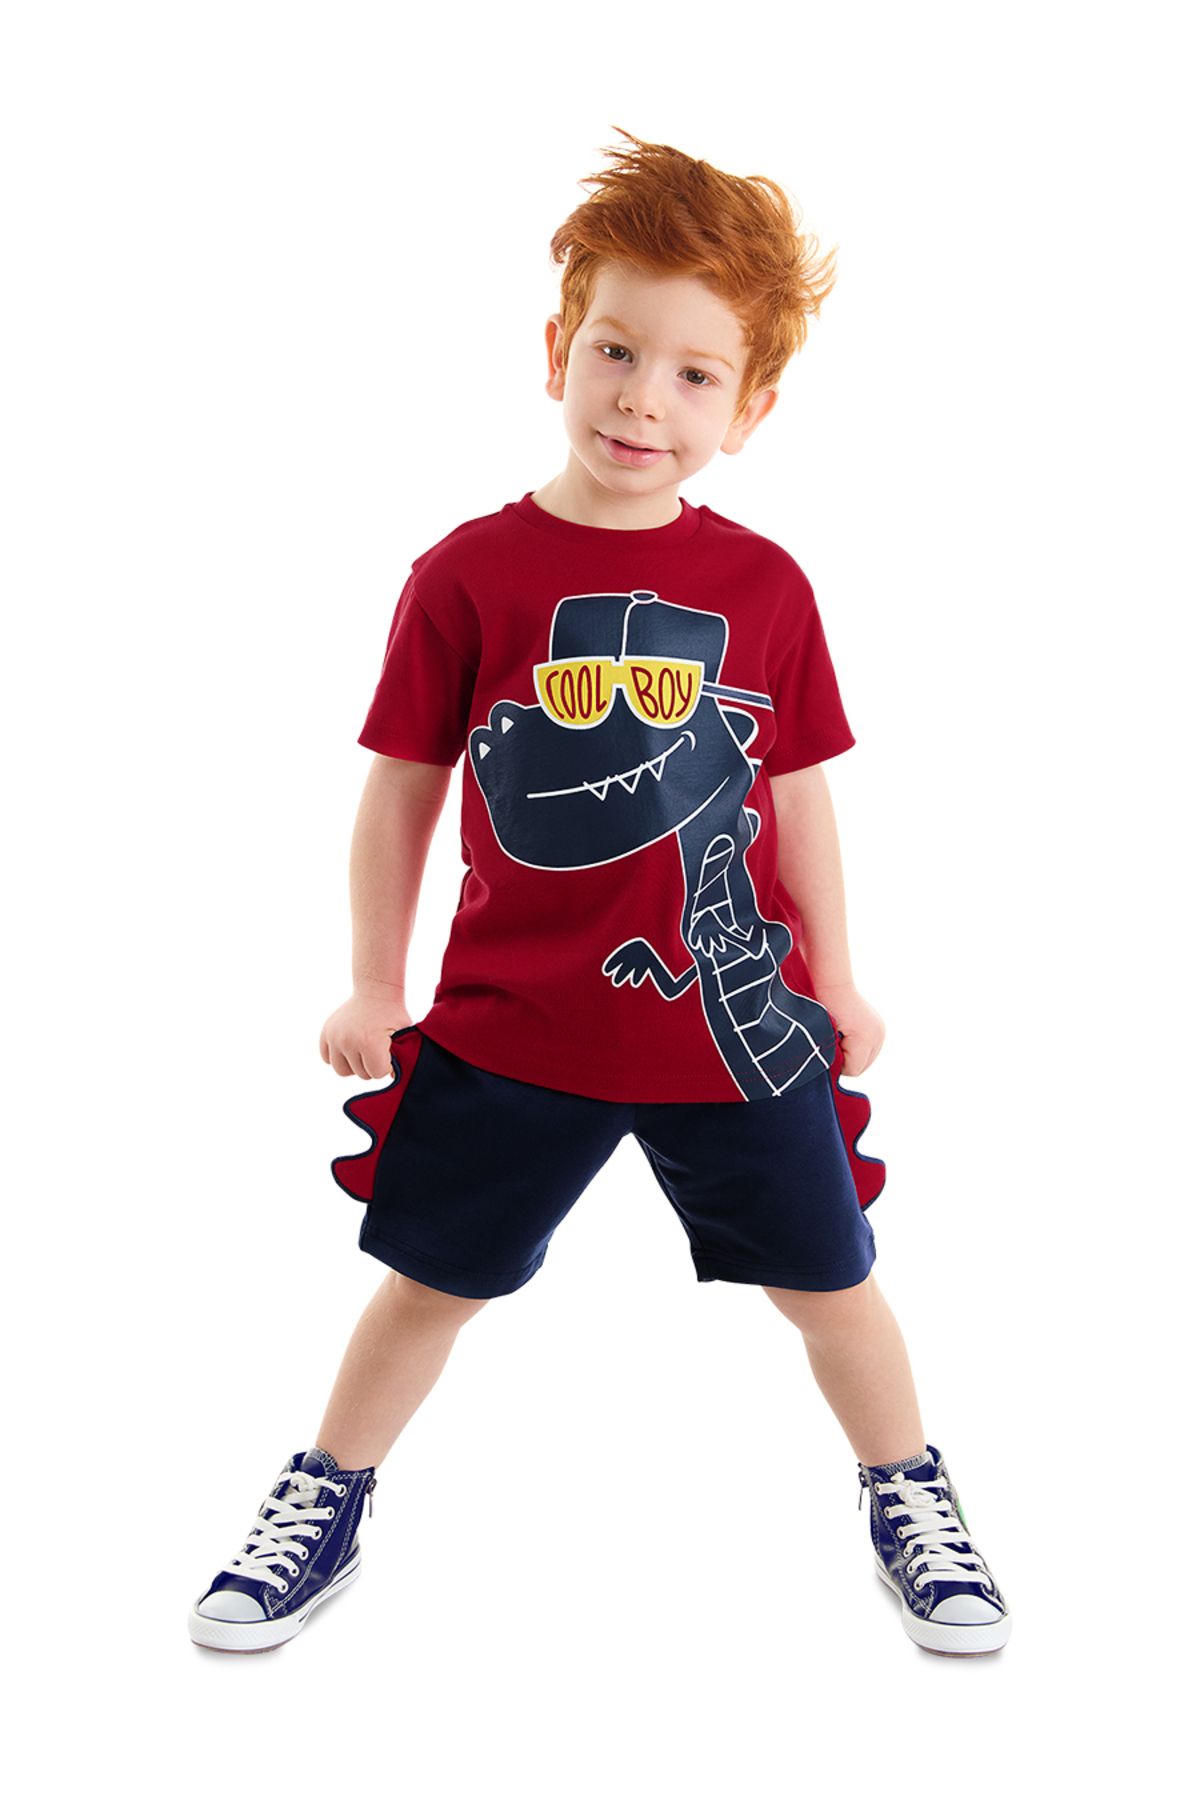 Denokids Cool Dino Erkek Çocuk Yazlık T-shirt Şort Takım